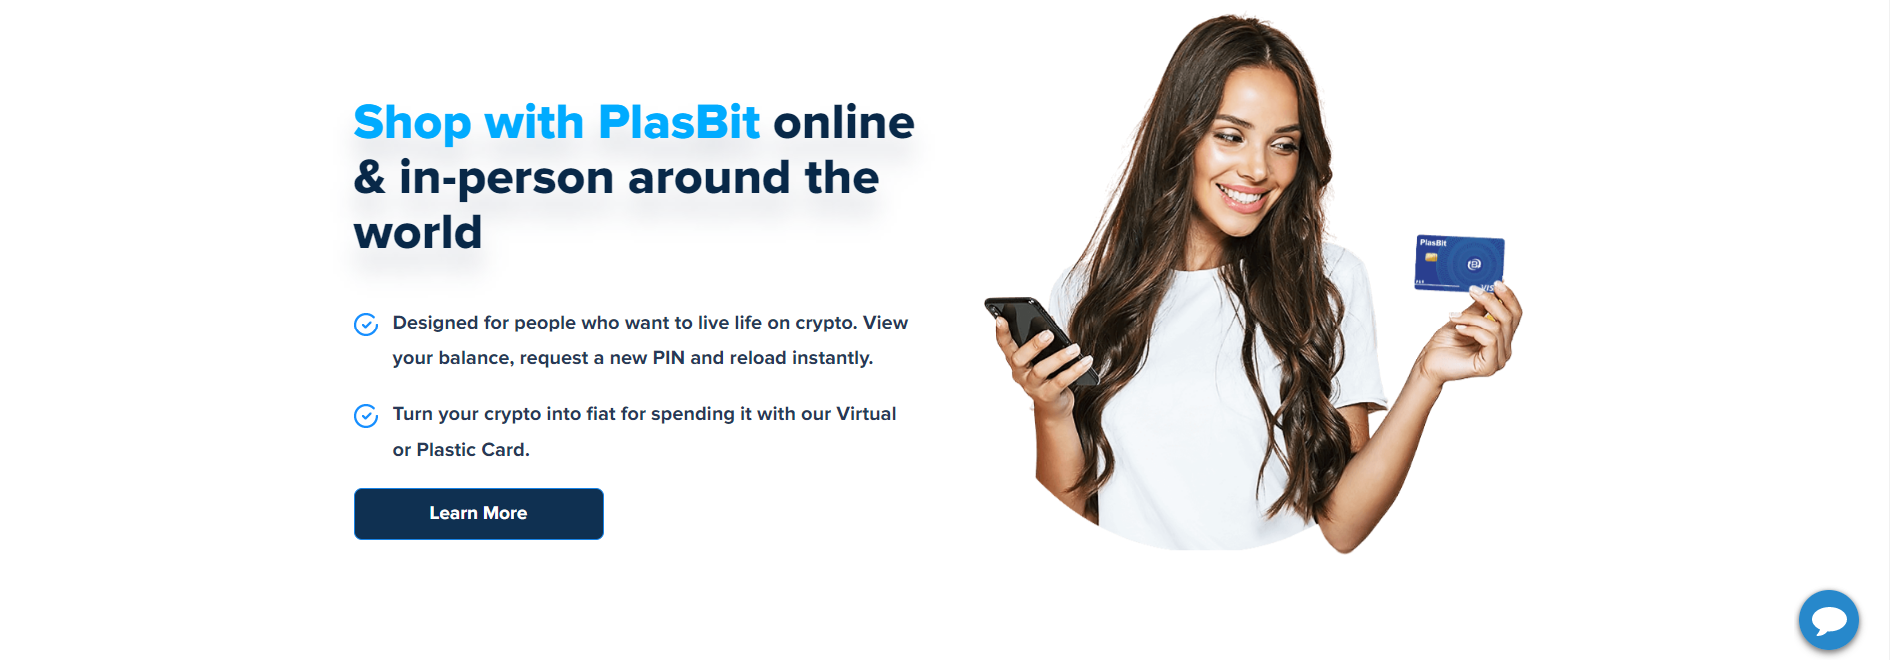 PlasBit Logiciel - 4